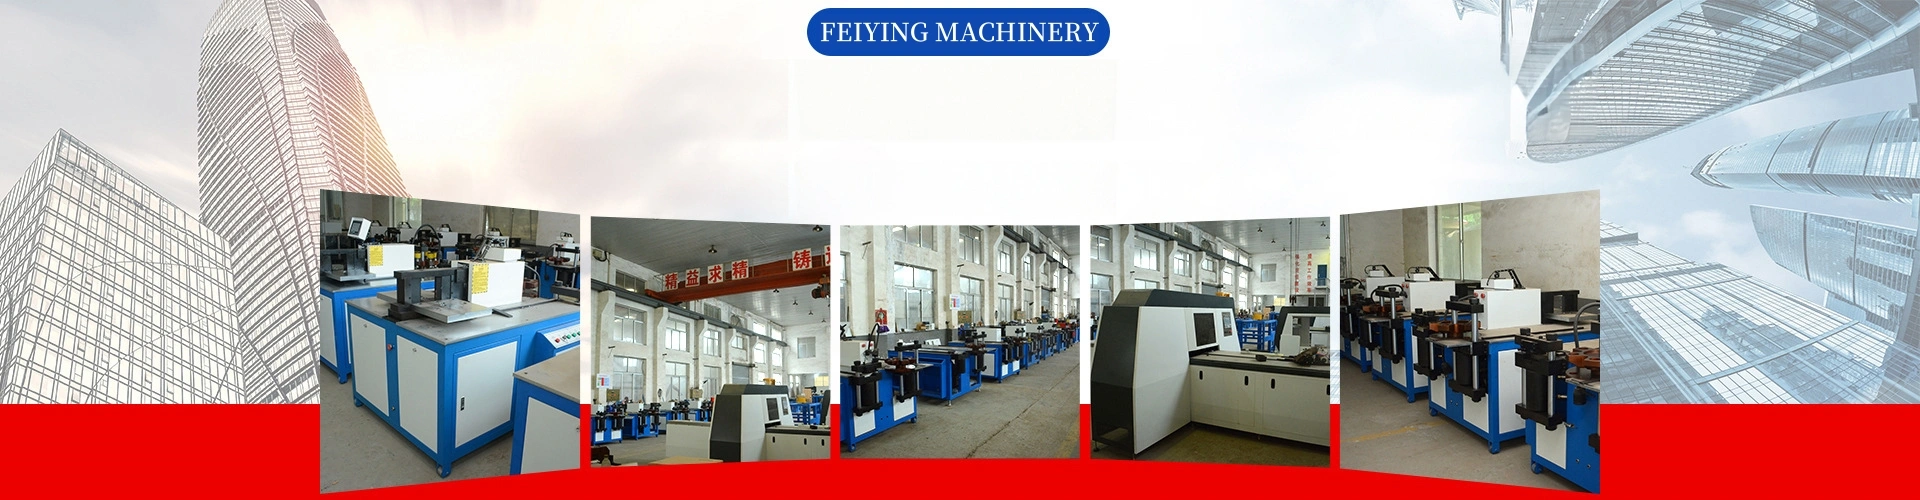 5000 ㎡ d’usine puissante, conception intégrée, production et vente 20 ans d’expérience dans la fabrication de machines de barres omnibus